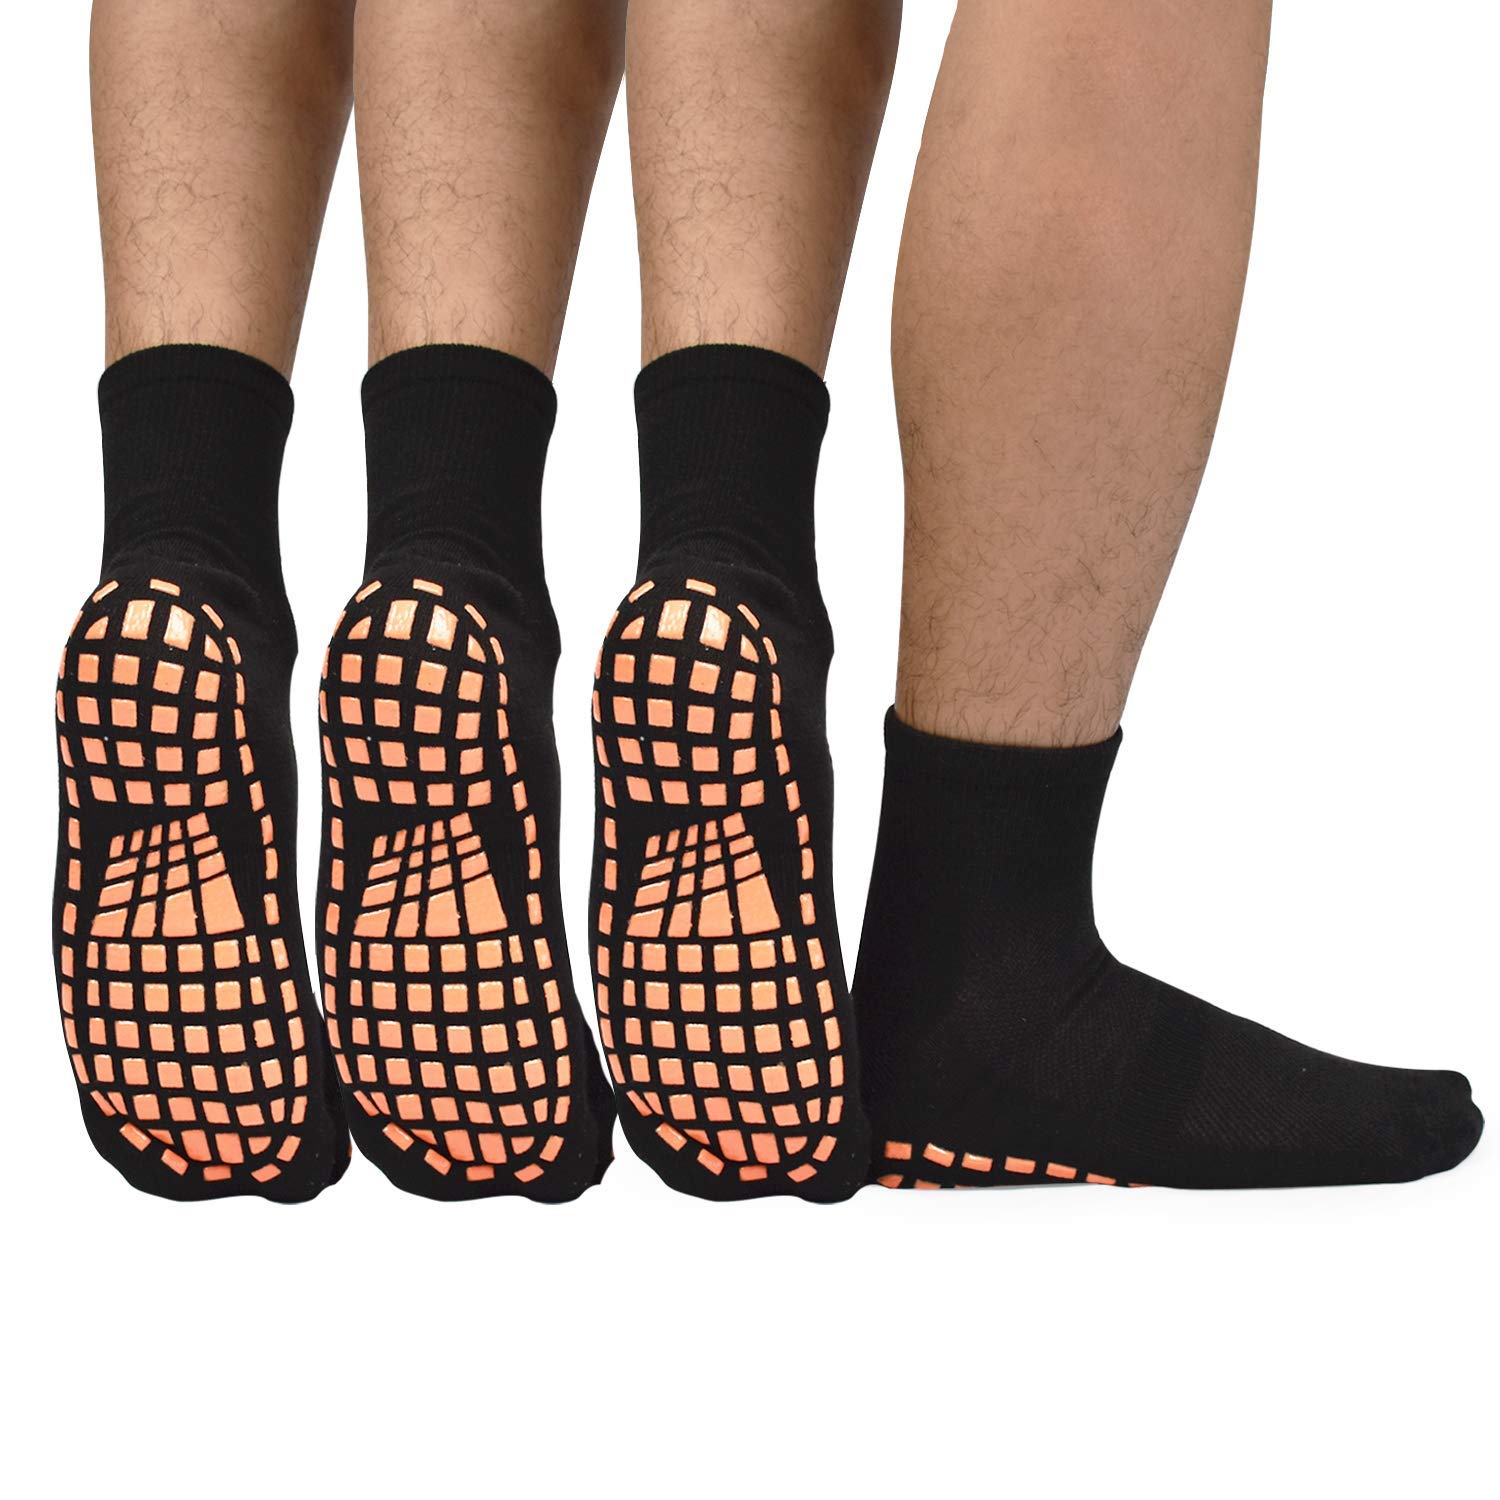 ELUTONG Men Non Slip Sticky Grips Socks 3 Pairs Tile Wood Floors Anti-Skid  Workout Yoga Pilates Hospital Slipper Socks Black+black+black 10-13